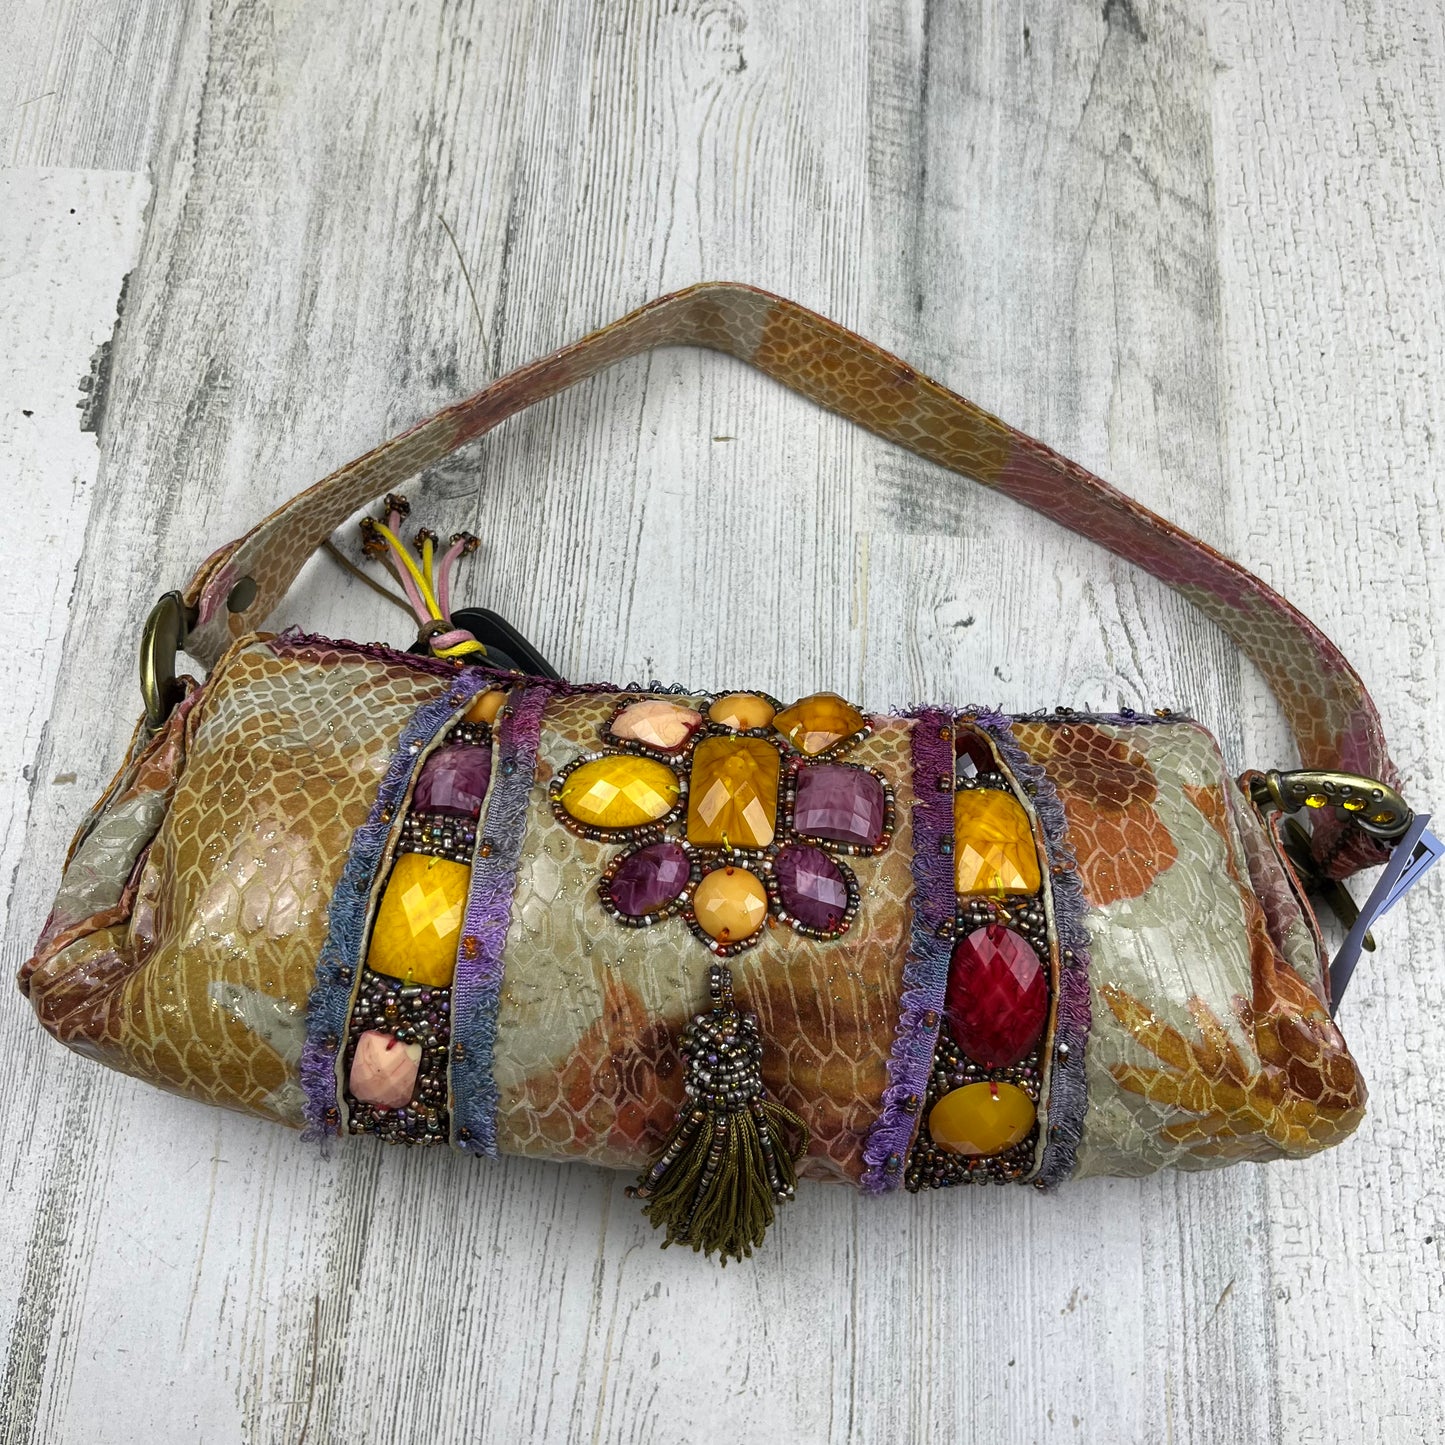 Handbag By Mary Frances  Size: Small